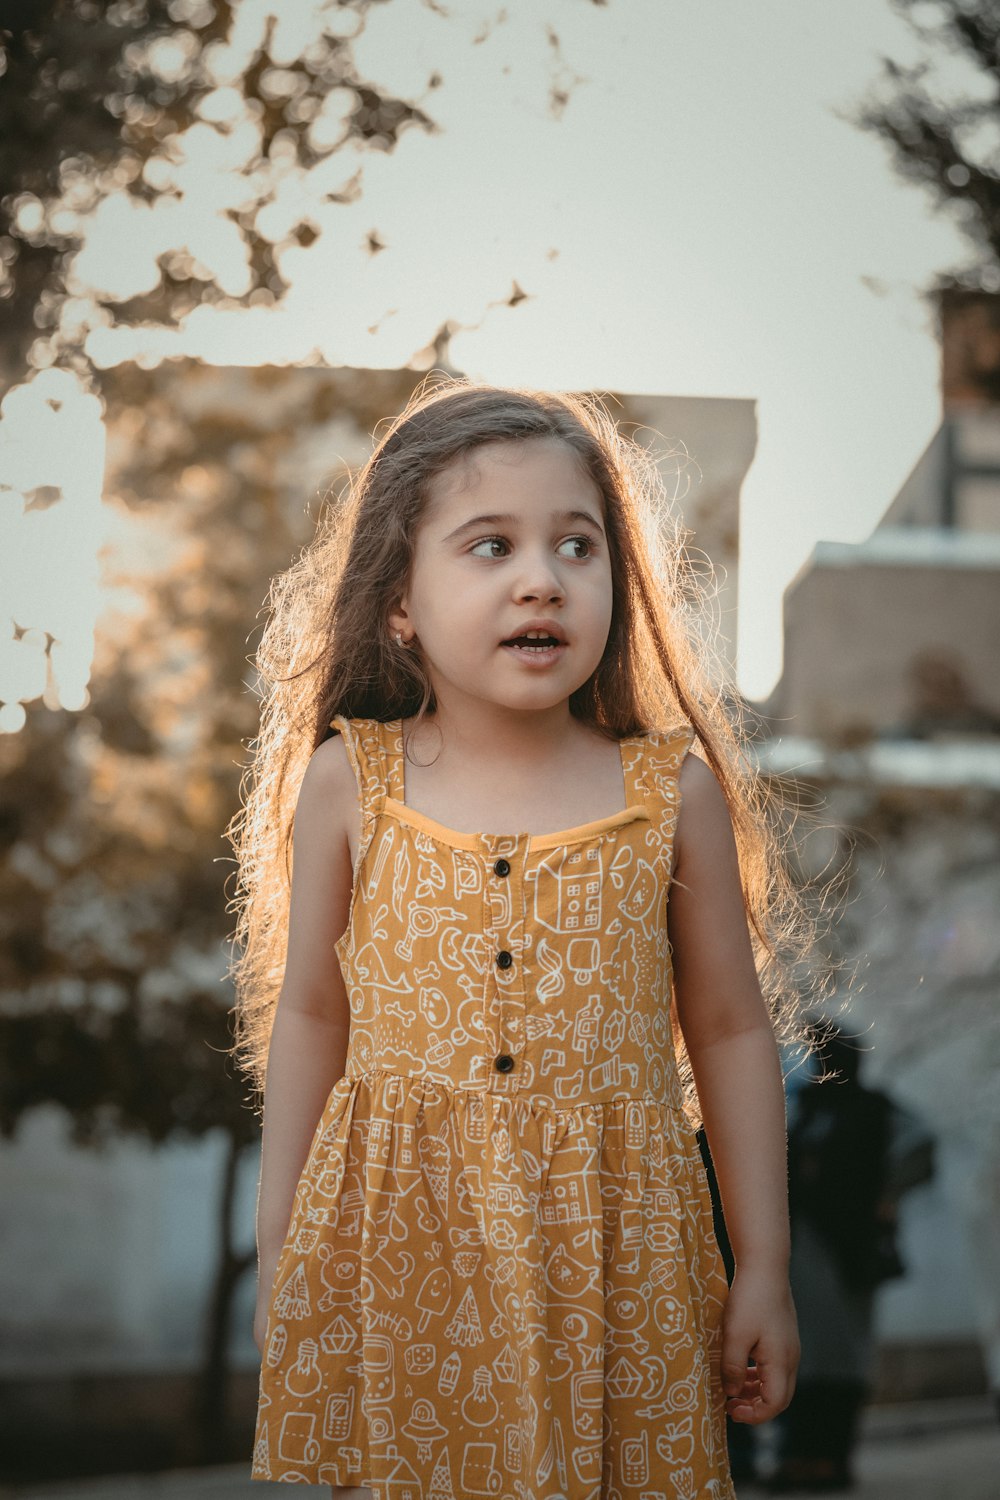 Ein kleines Mädchen im gelben Kleid steht vor einem Baum